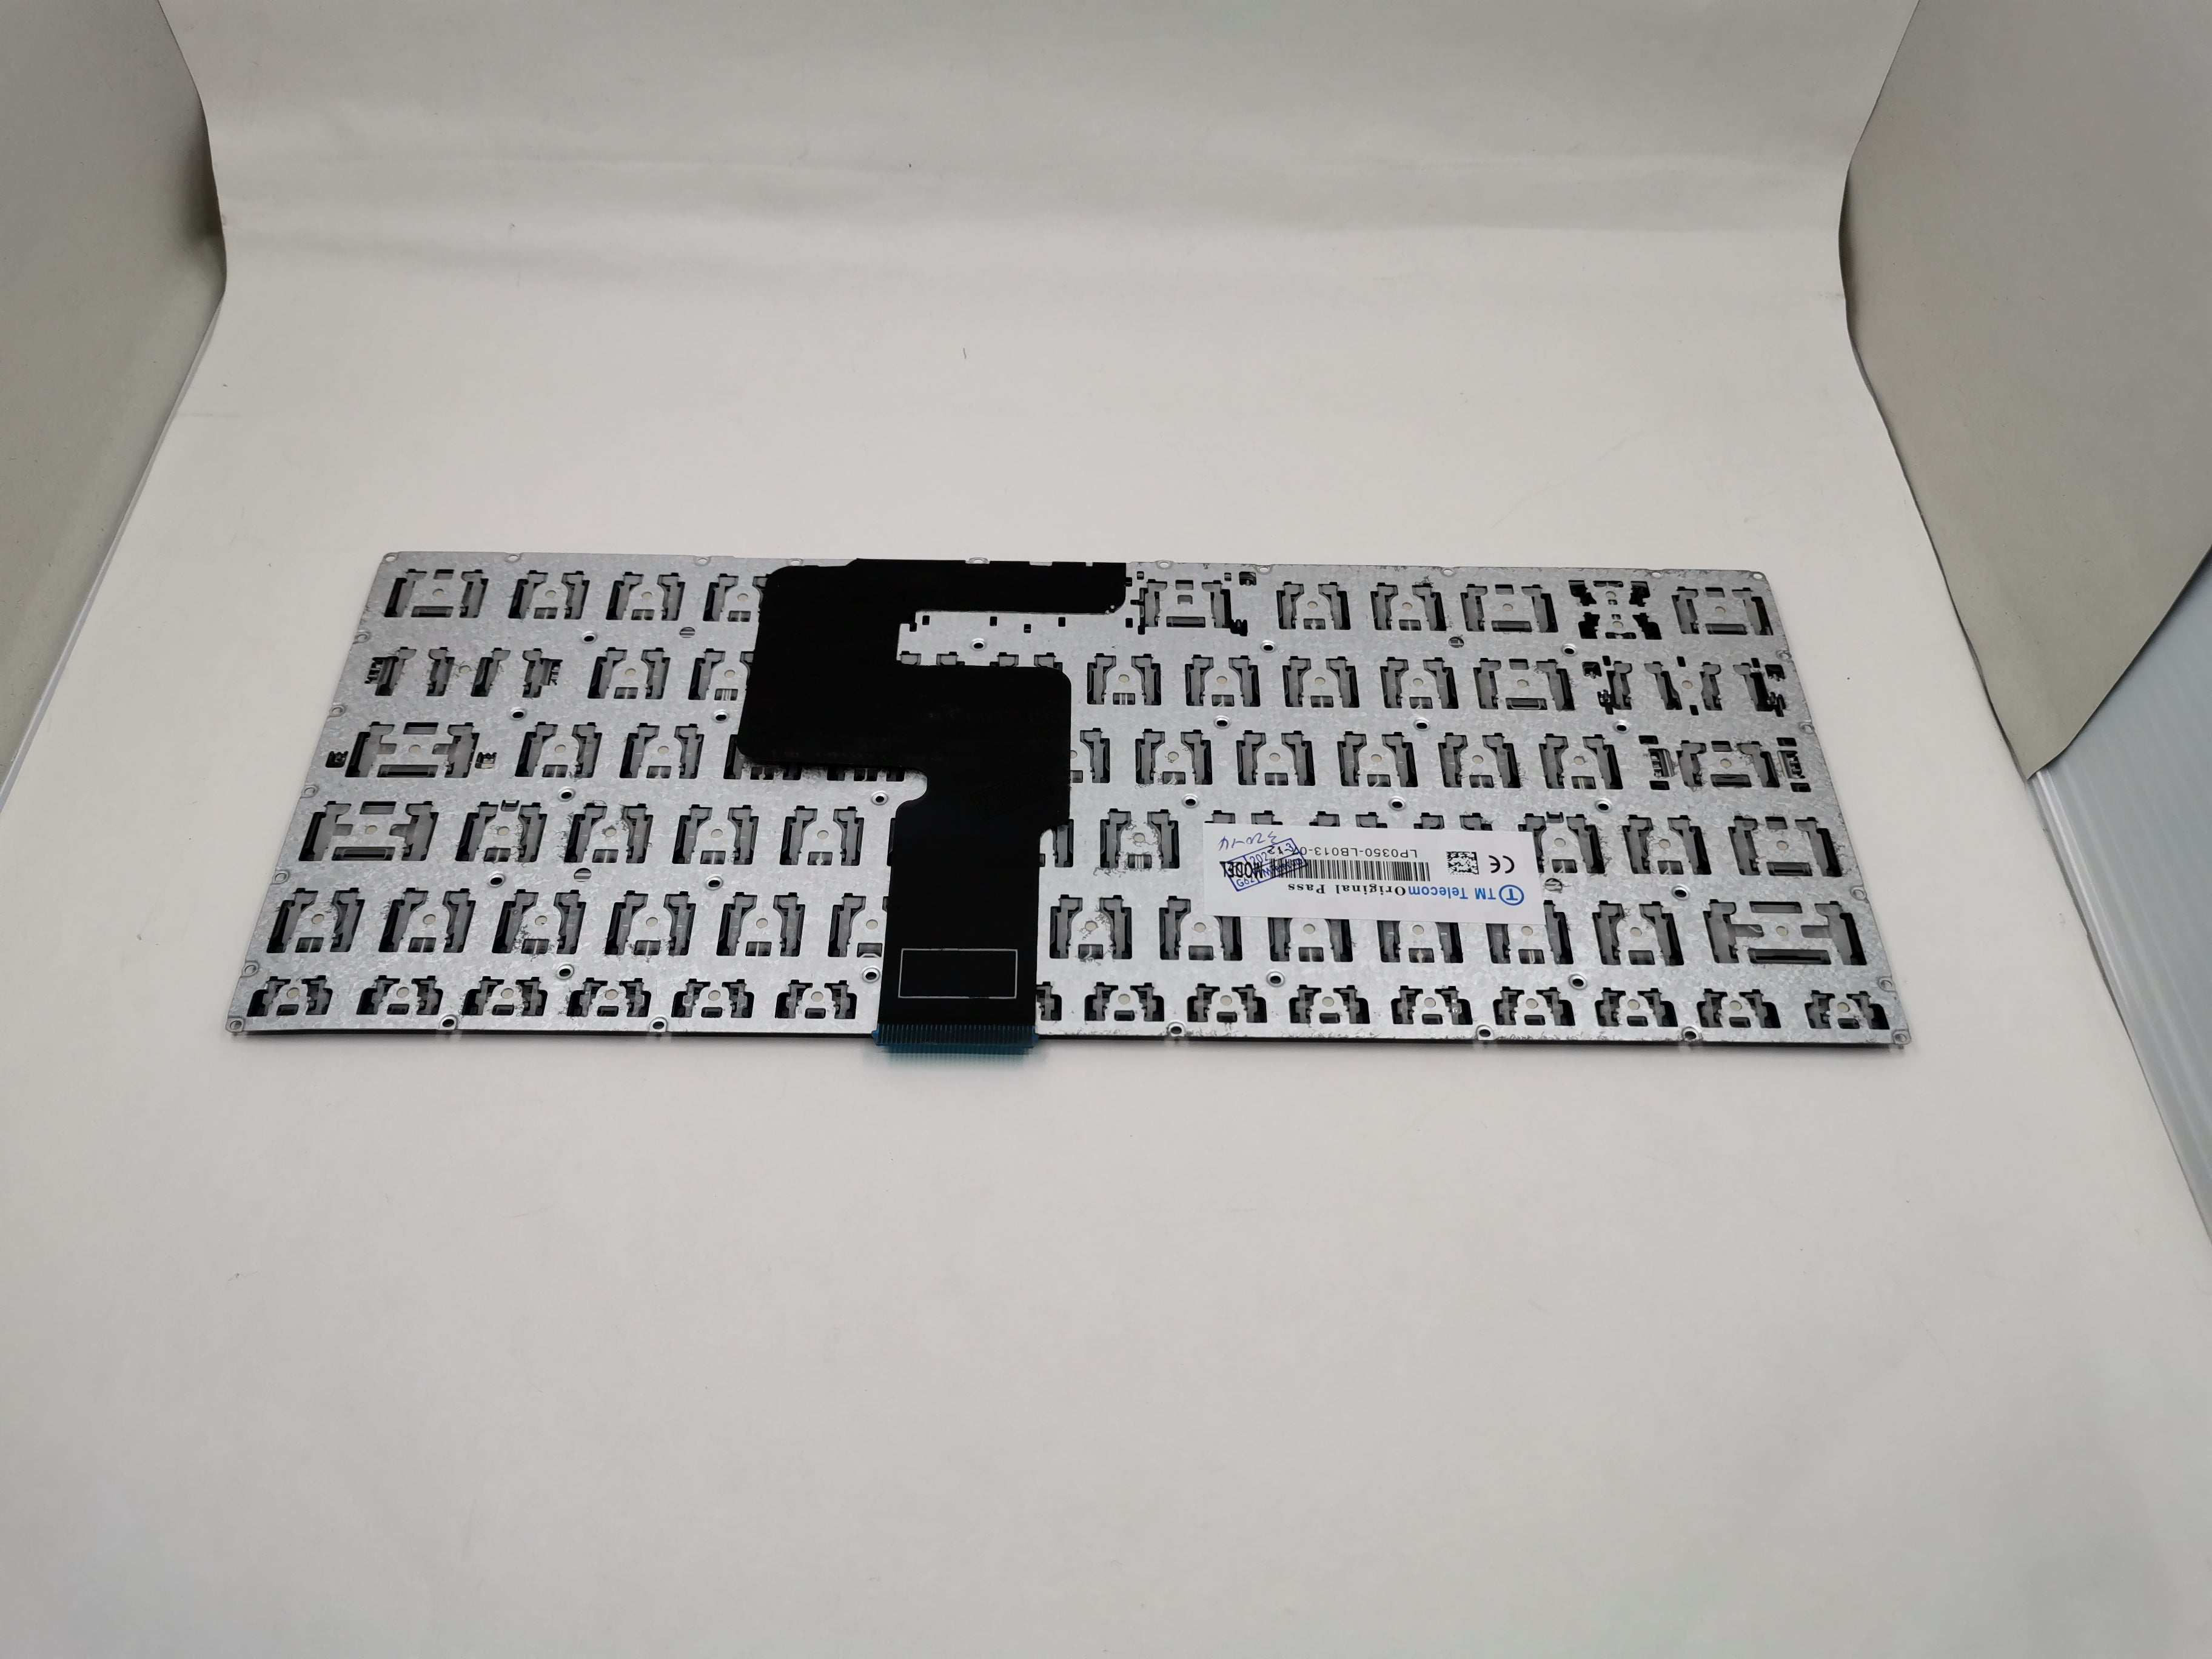 Lenovo Keyboard for Lenovo IdeaPad S145-14IKB